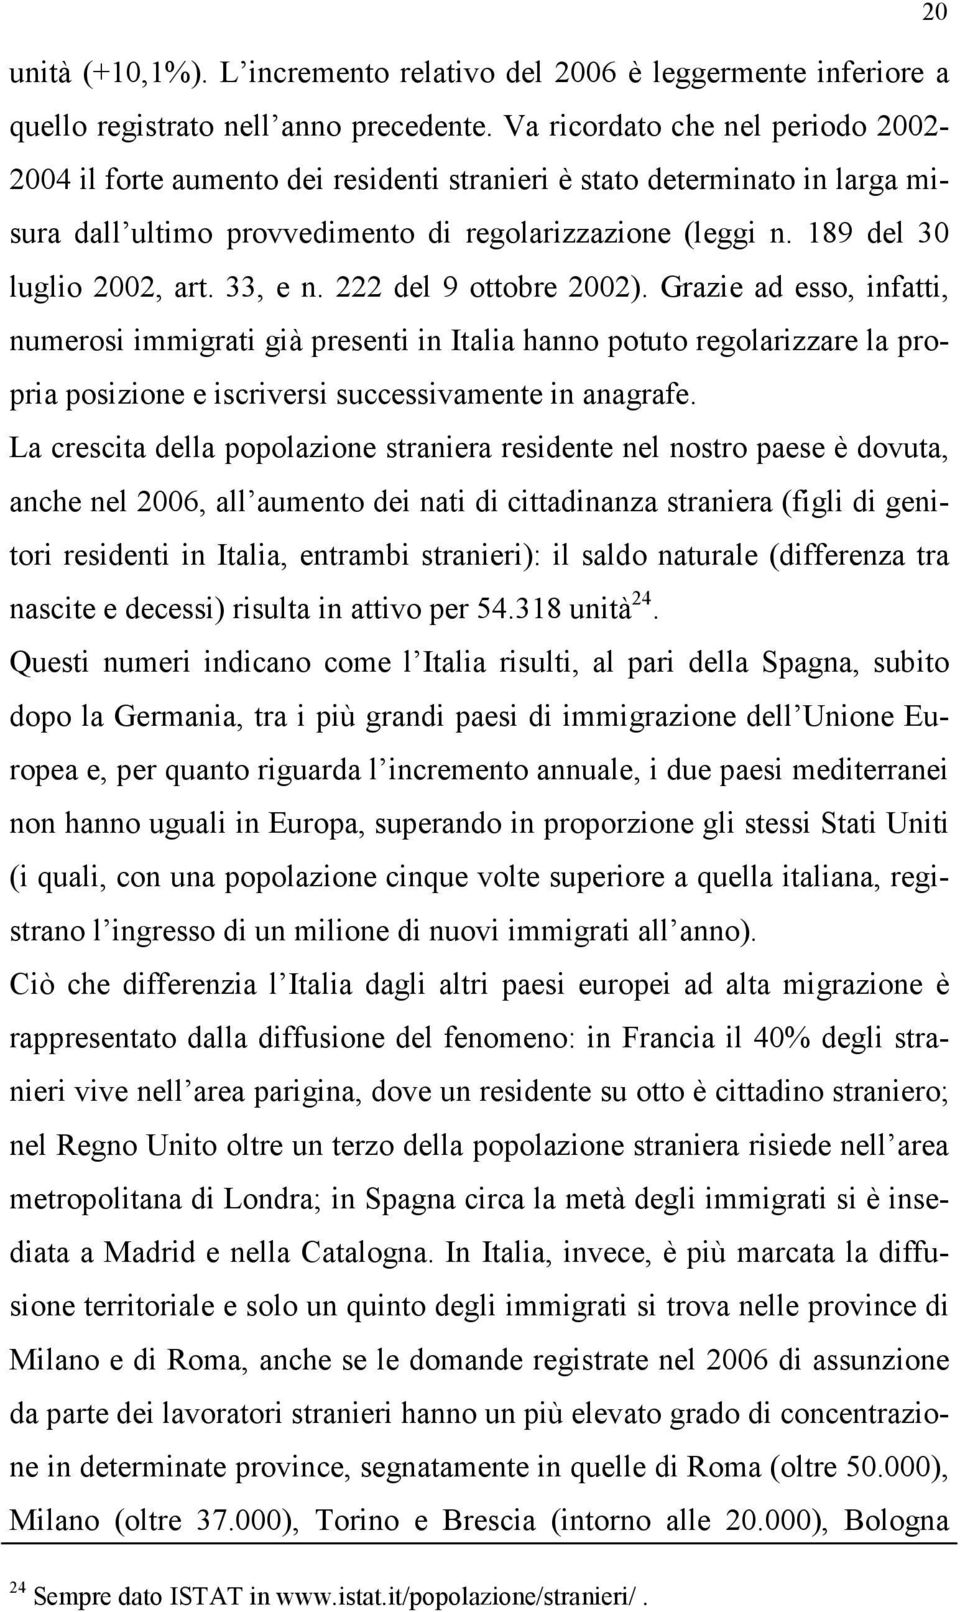 33, e n. 222 del 9 ottobre 2002). Grazie ad esso, infatti, numerosi immigrati già presenti in Italia hanno potuto regolarizzare la propria posizione e iscriversi successivamente in anagrafe.